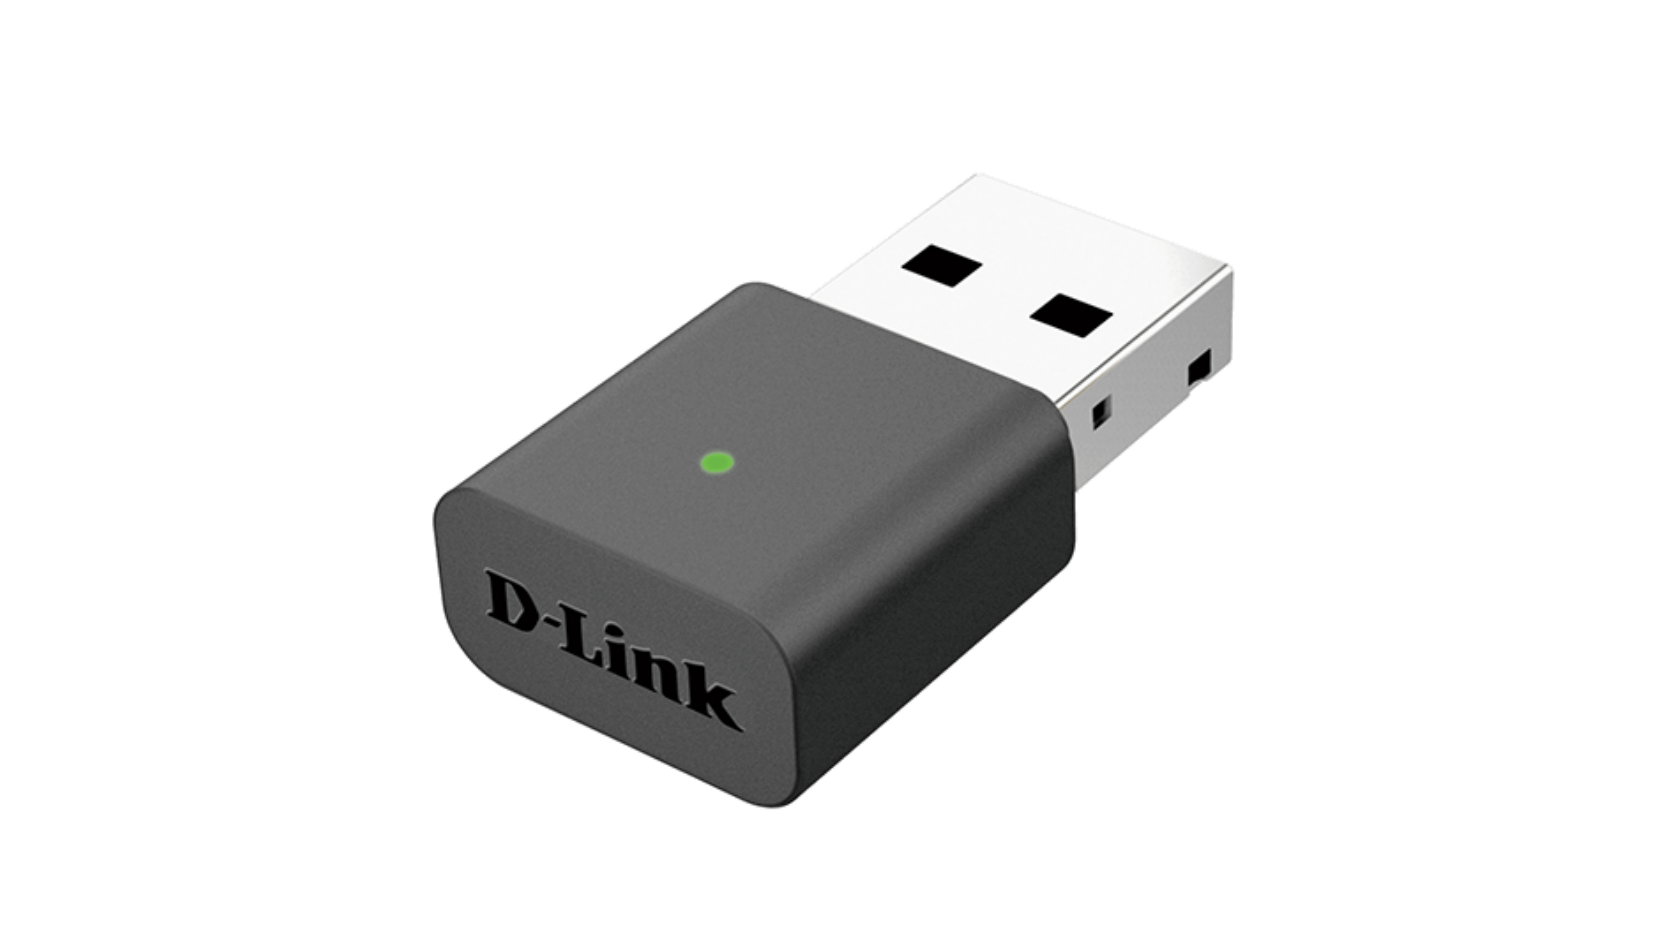 D-Link DWA-131 Wireless Adapter